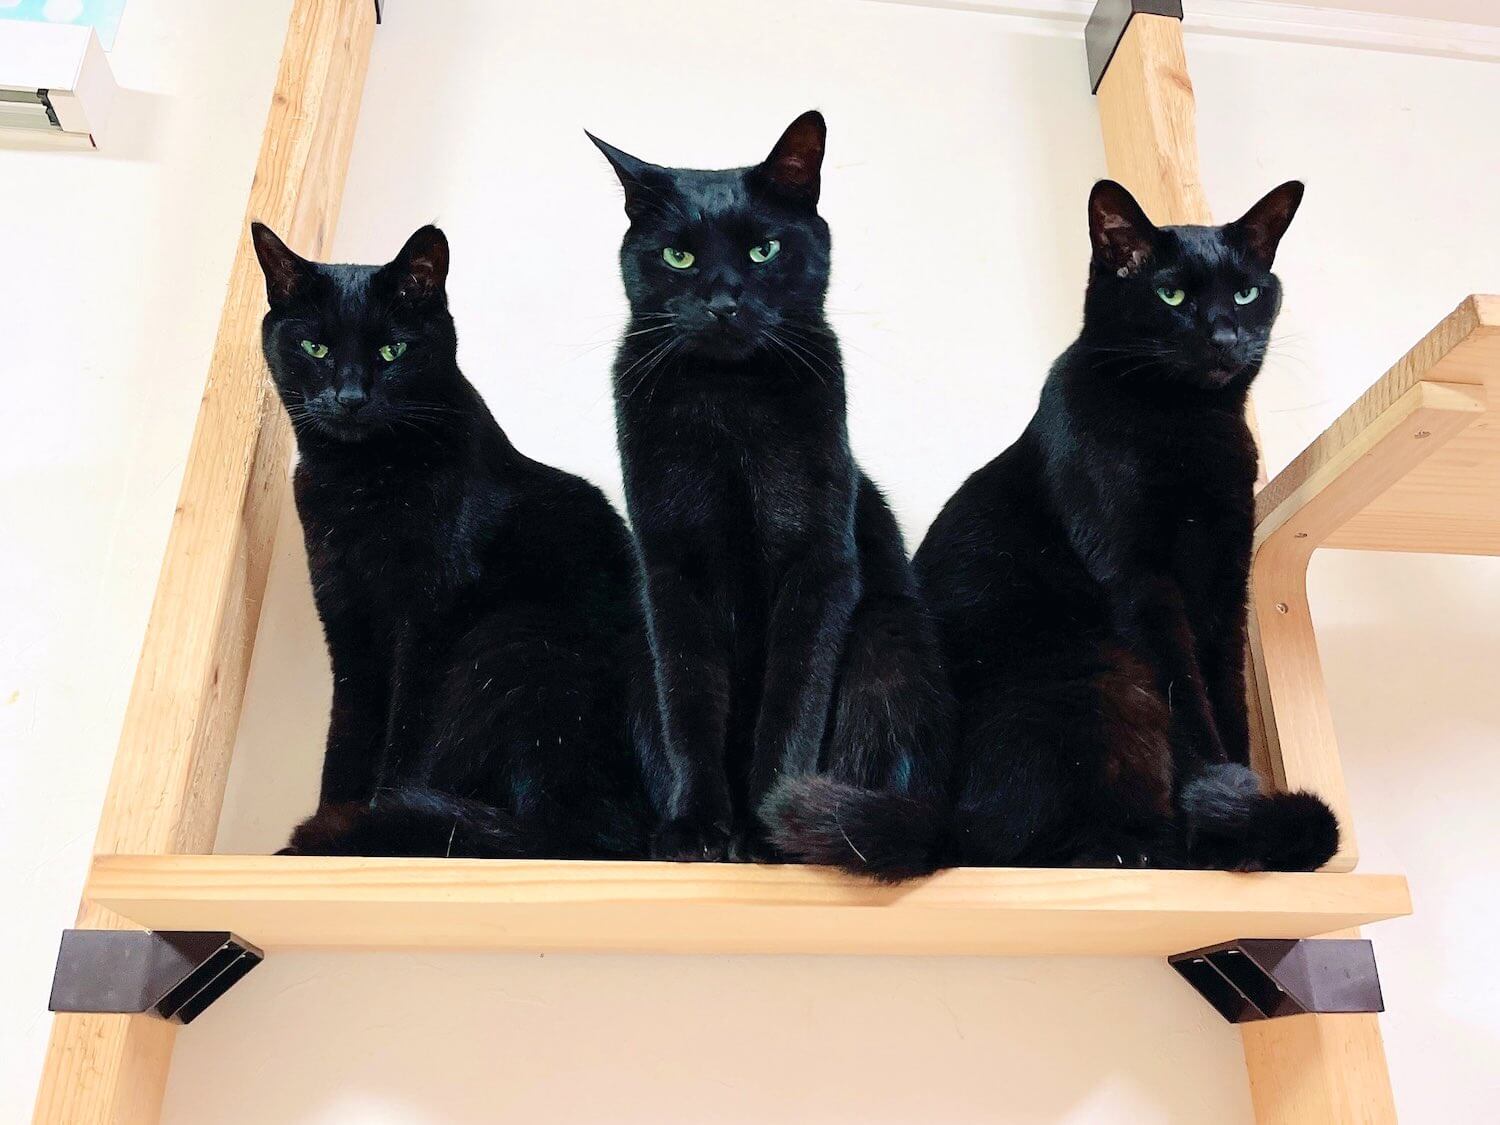 ひとつの胴体から3つの顔が出ているように見える黒猫「ニャルベロス」